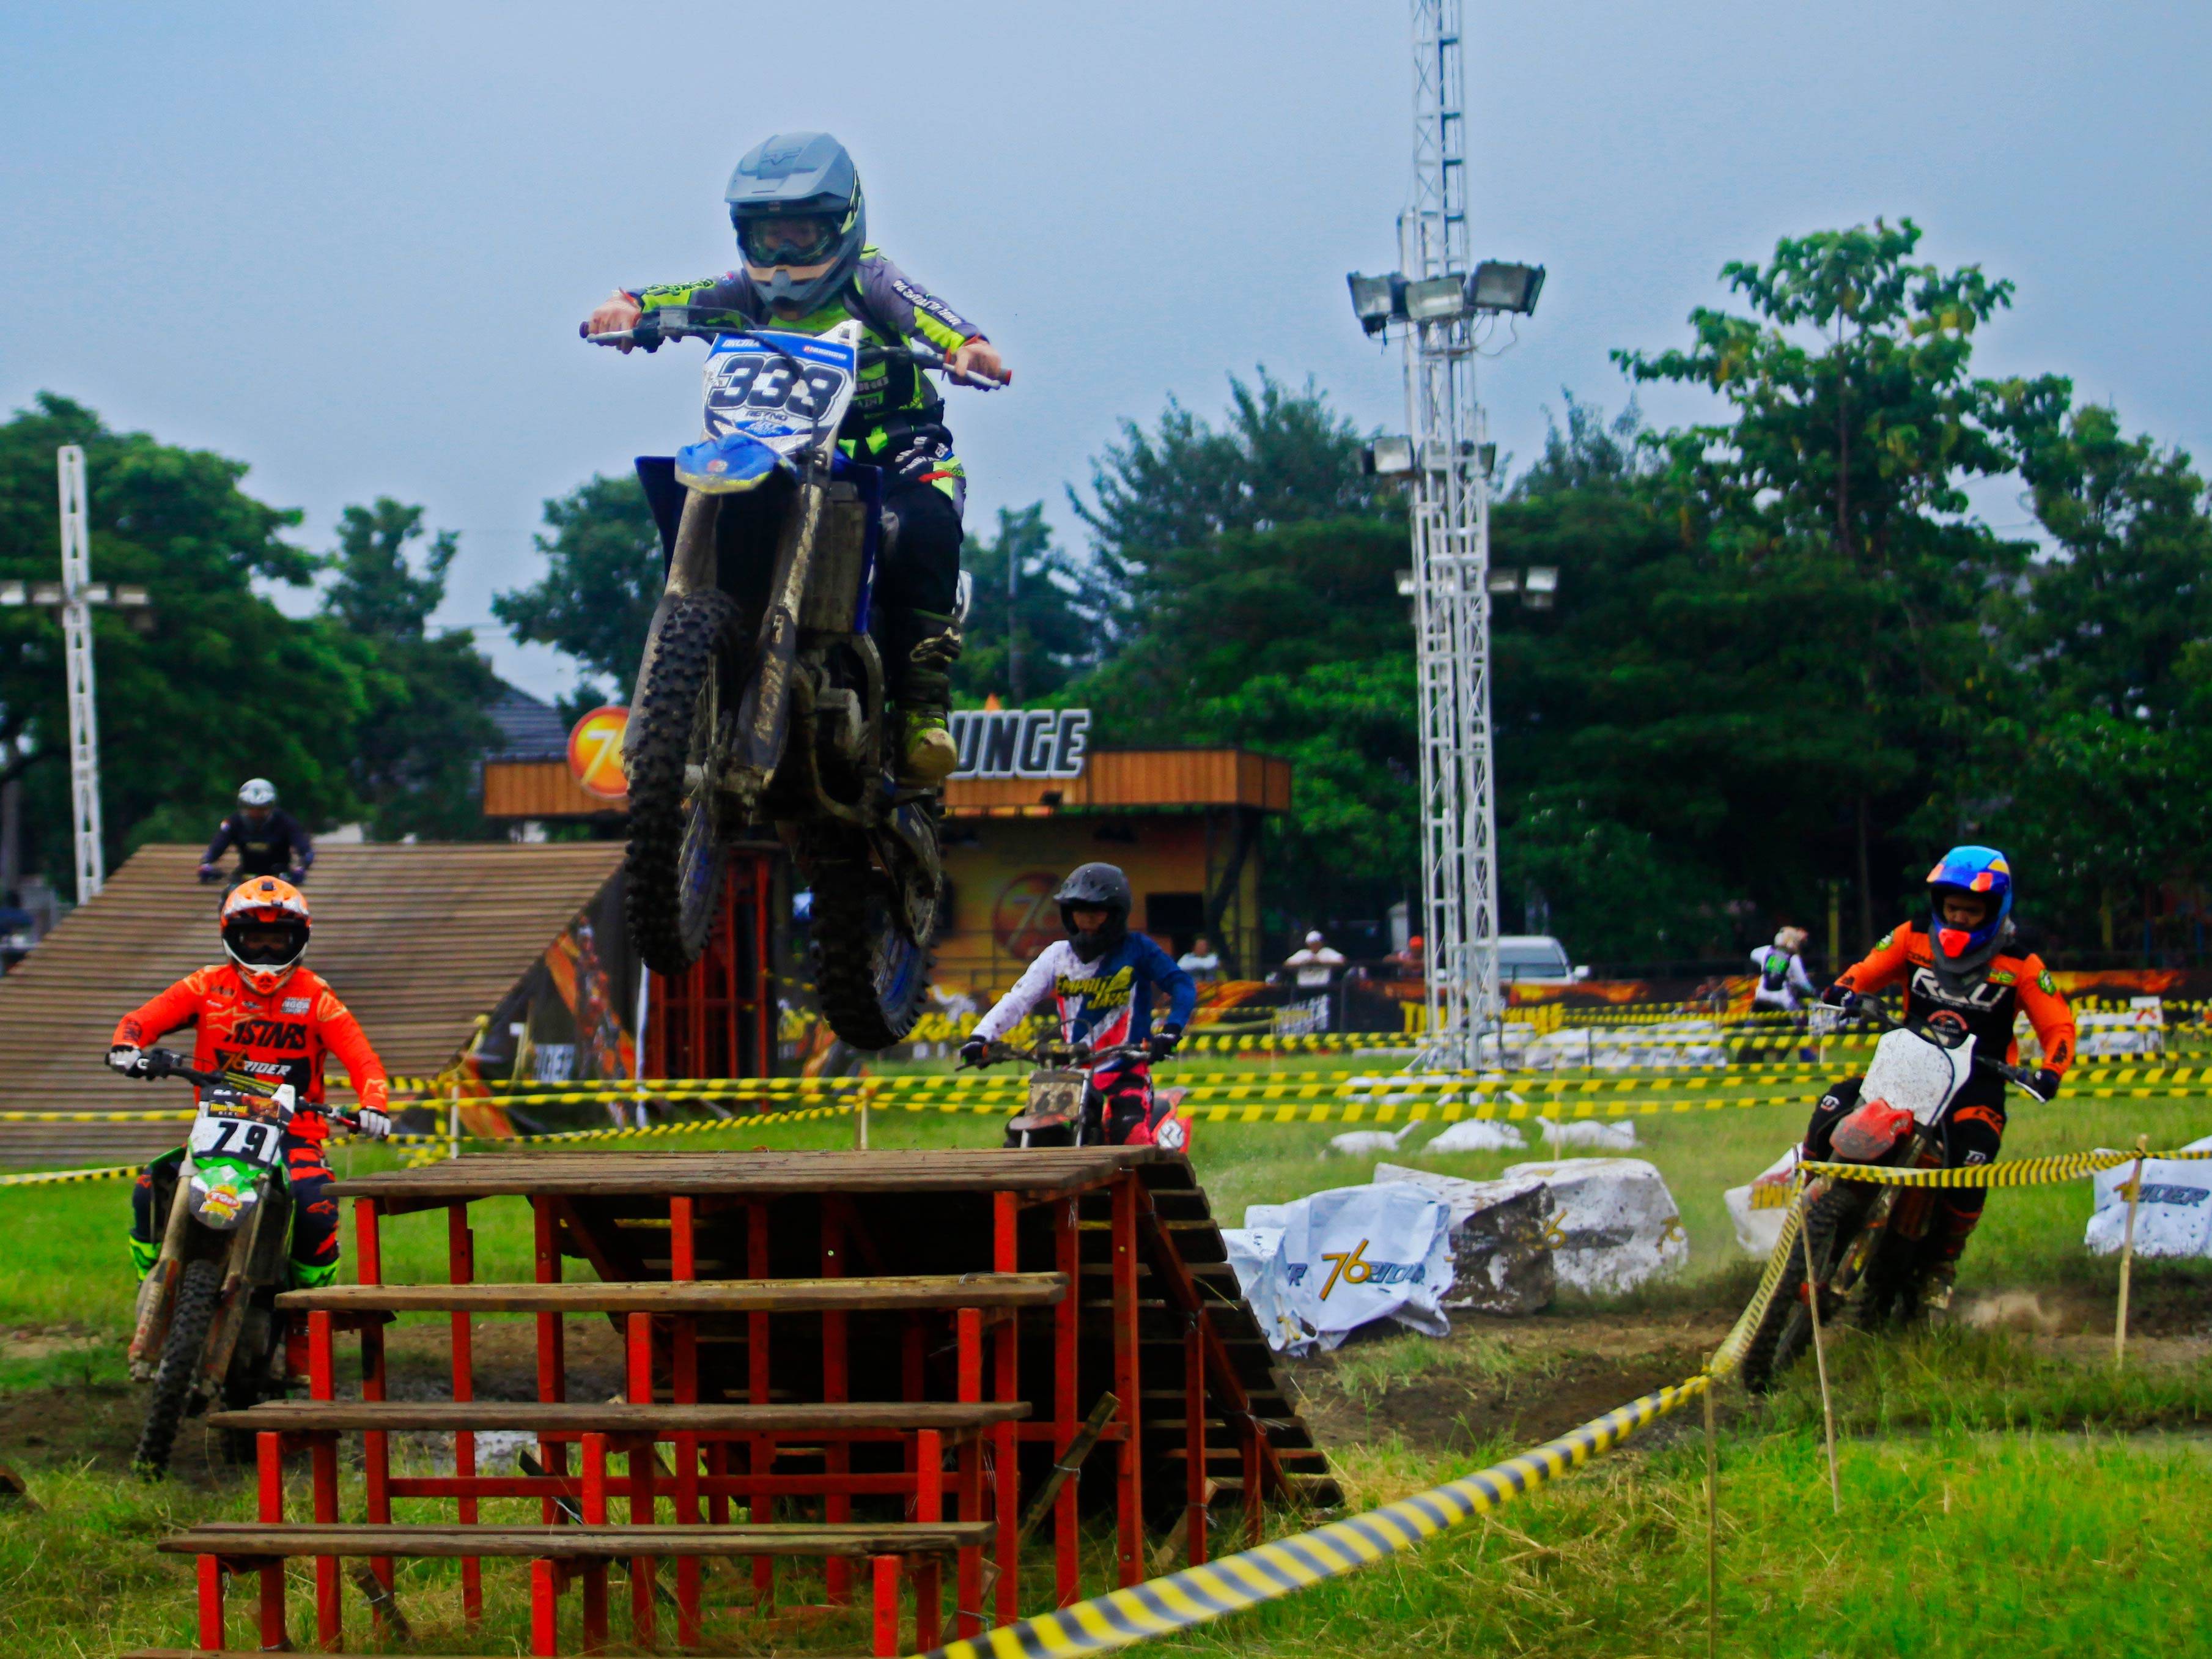 Pembukaan Trial Game Dirt tahun 2020 diadakan di Lapangan Surodinawan Mojokerto